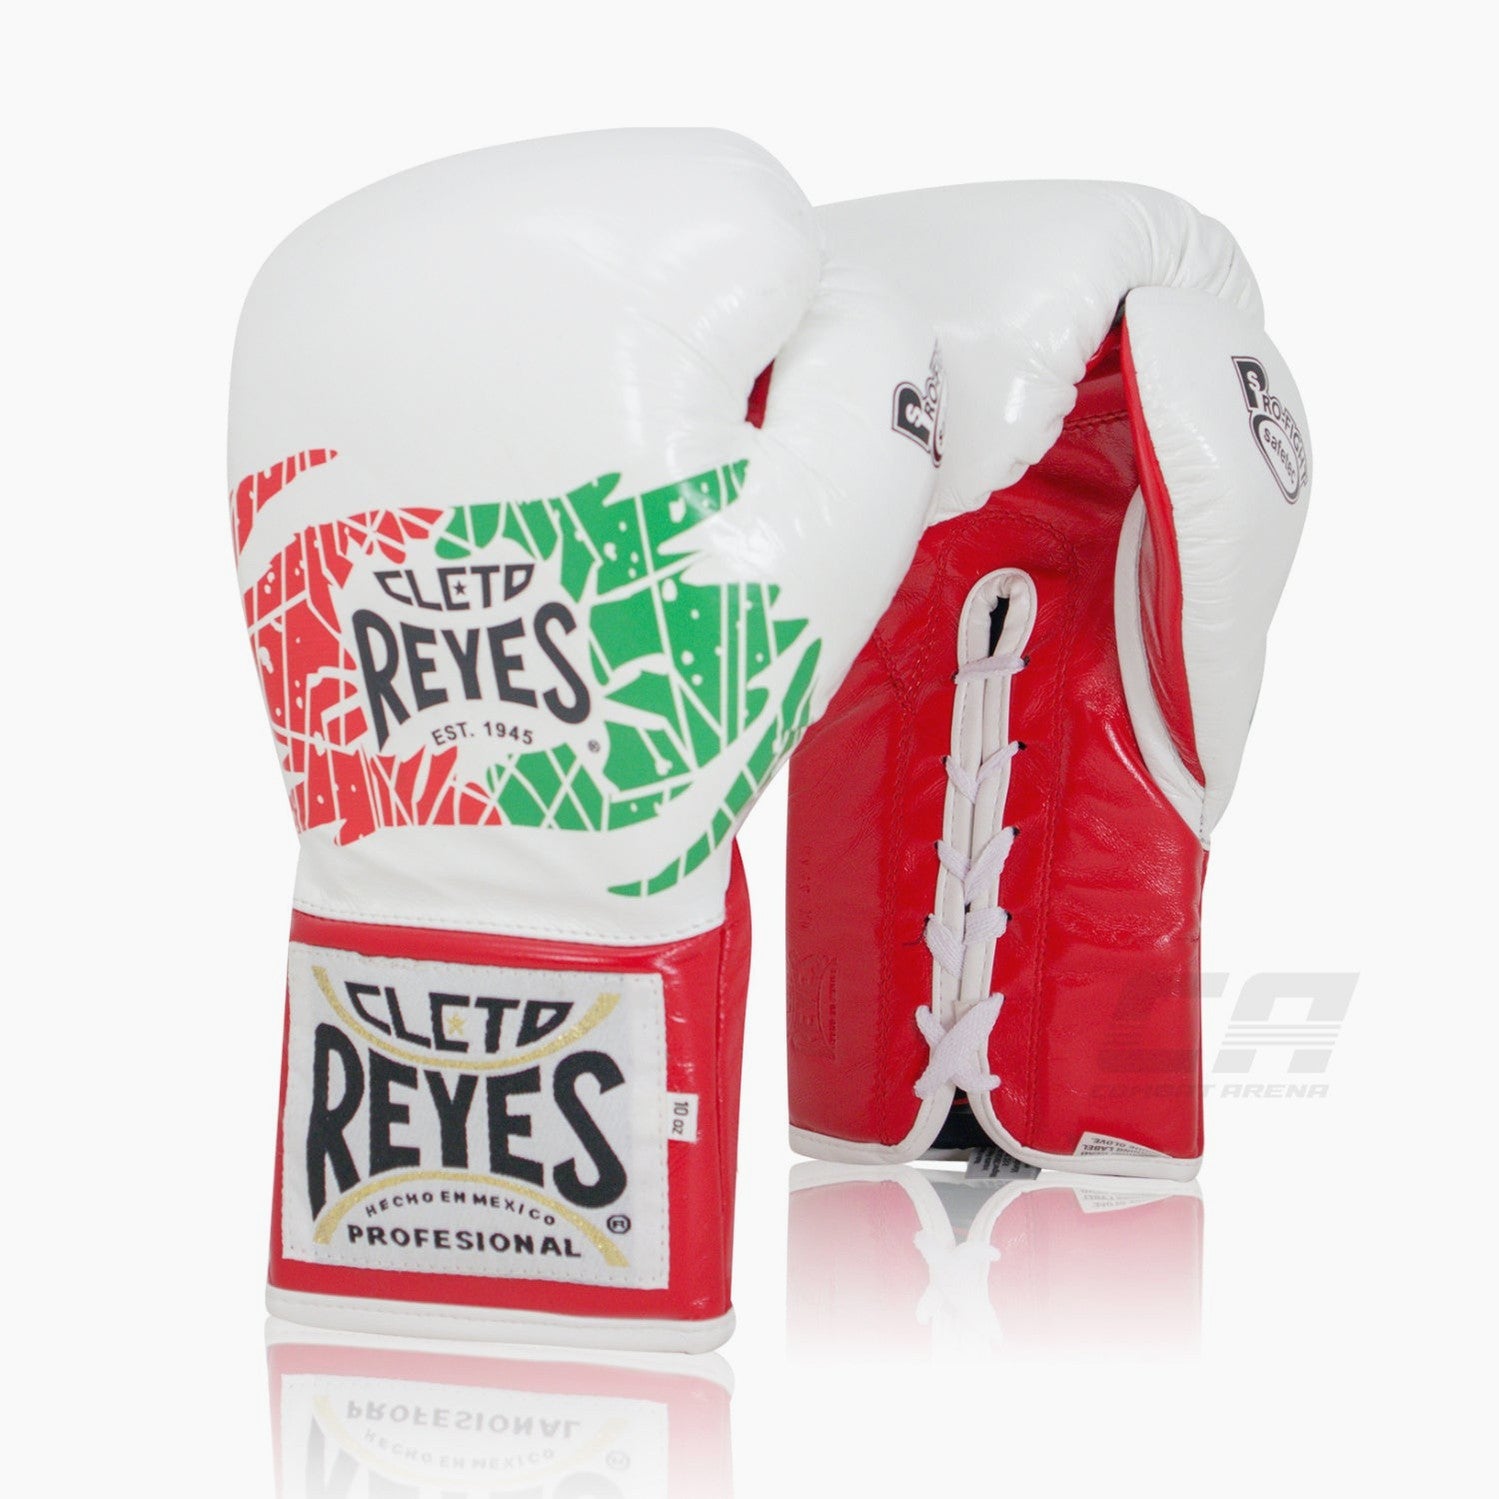 Cleto Reyes  Guantes, ropa y accesorios de boxeo de Cleto Reyes